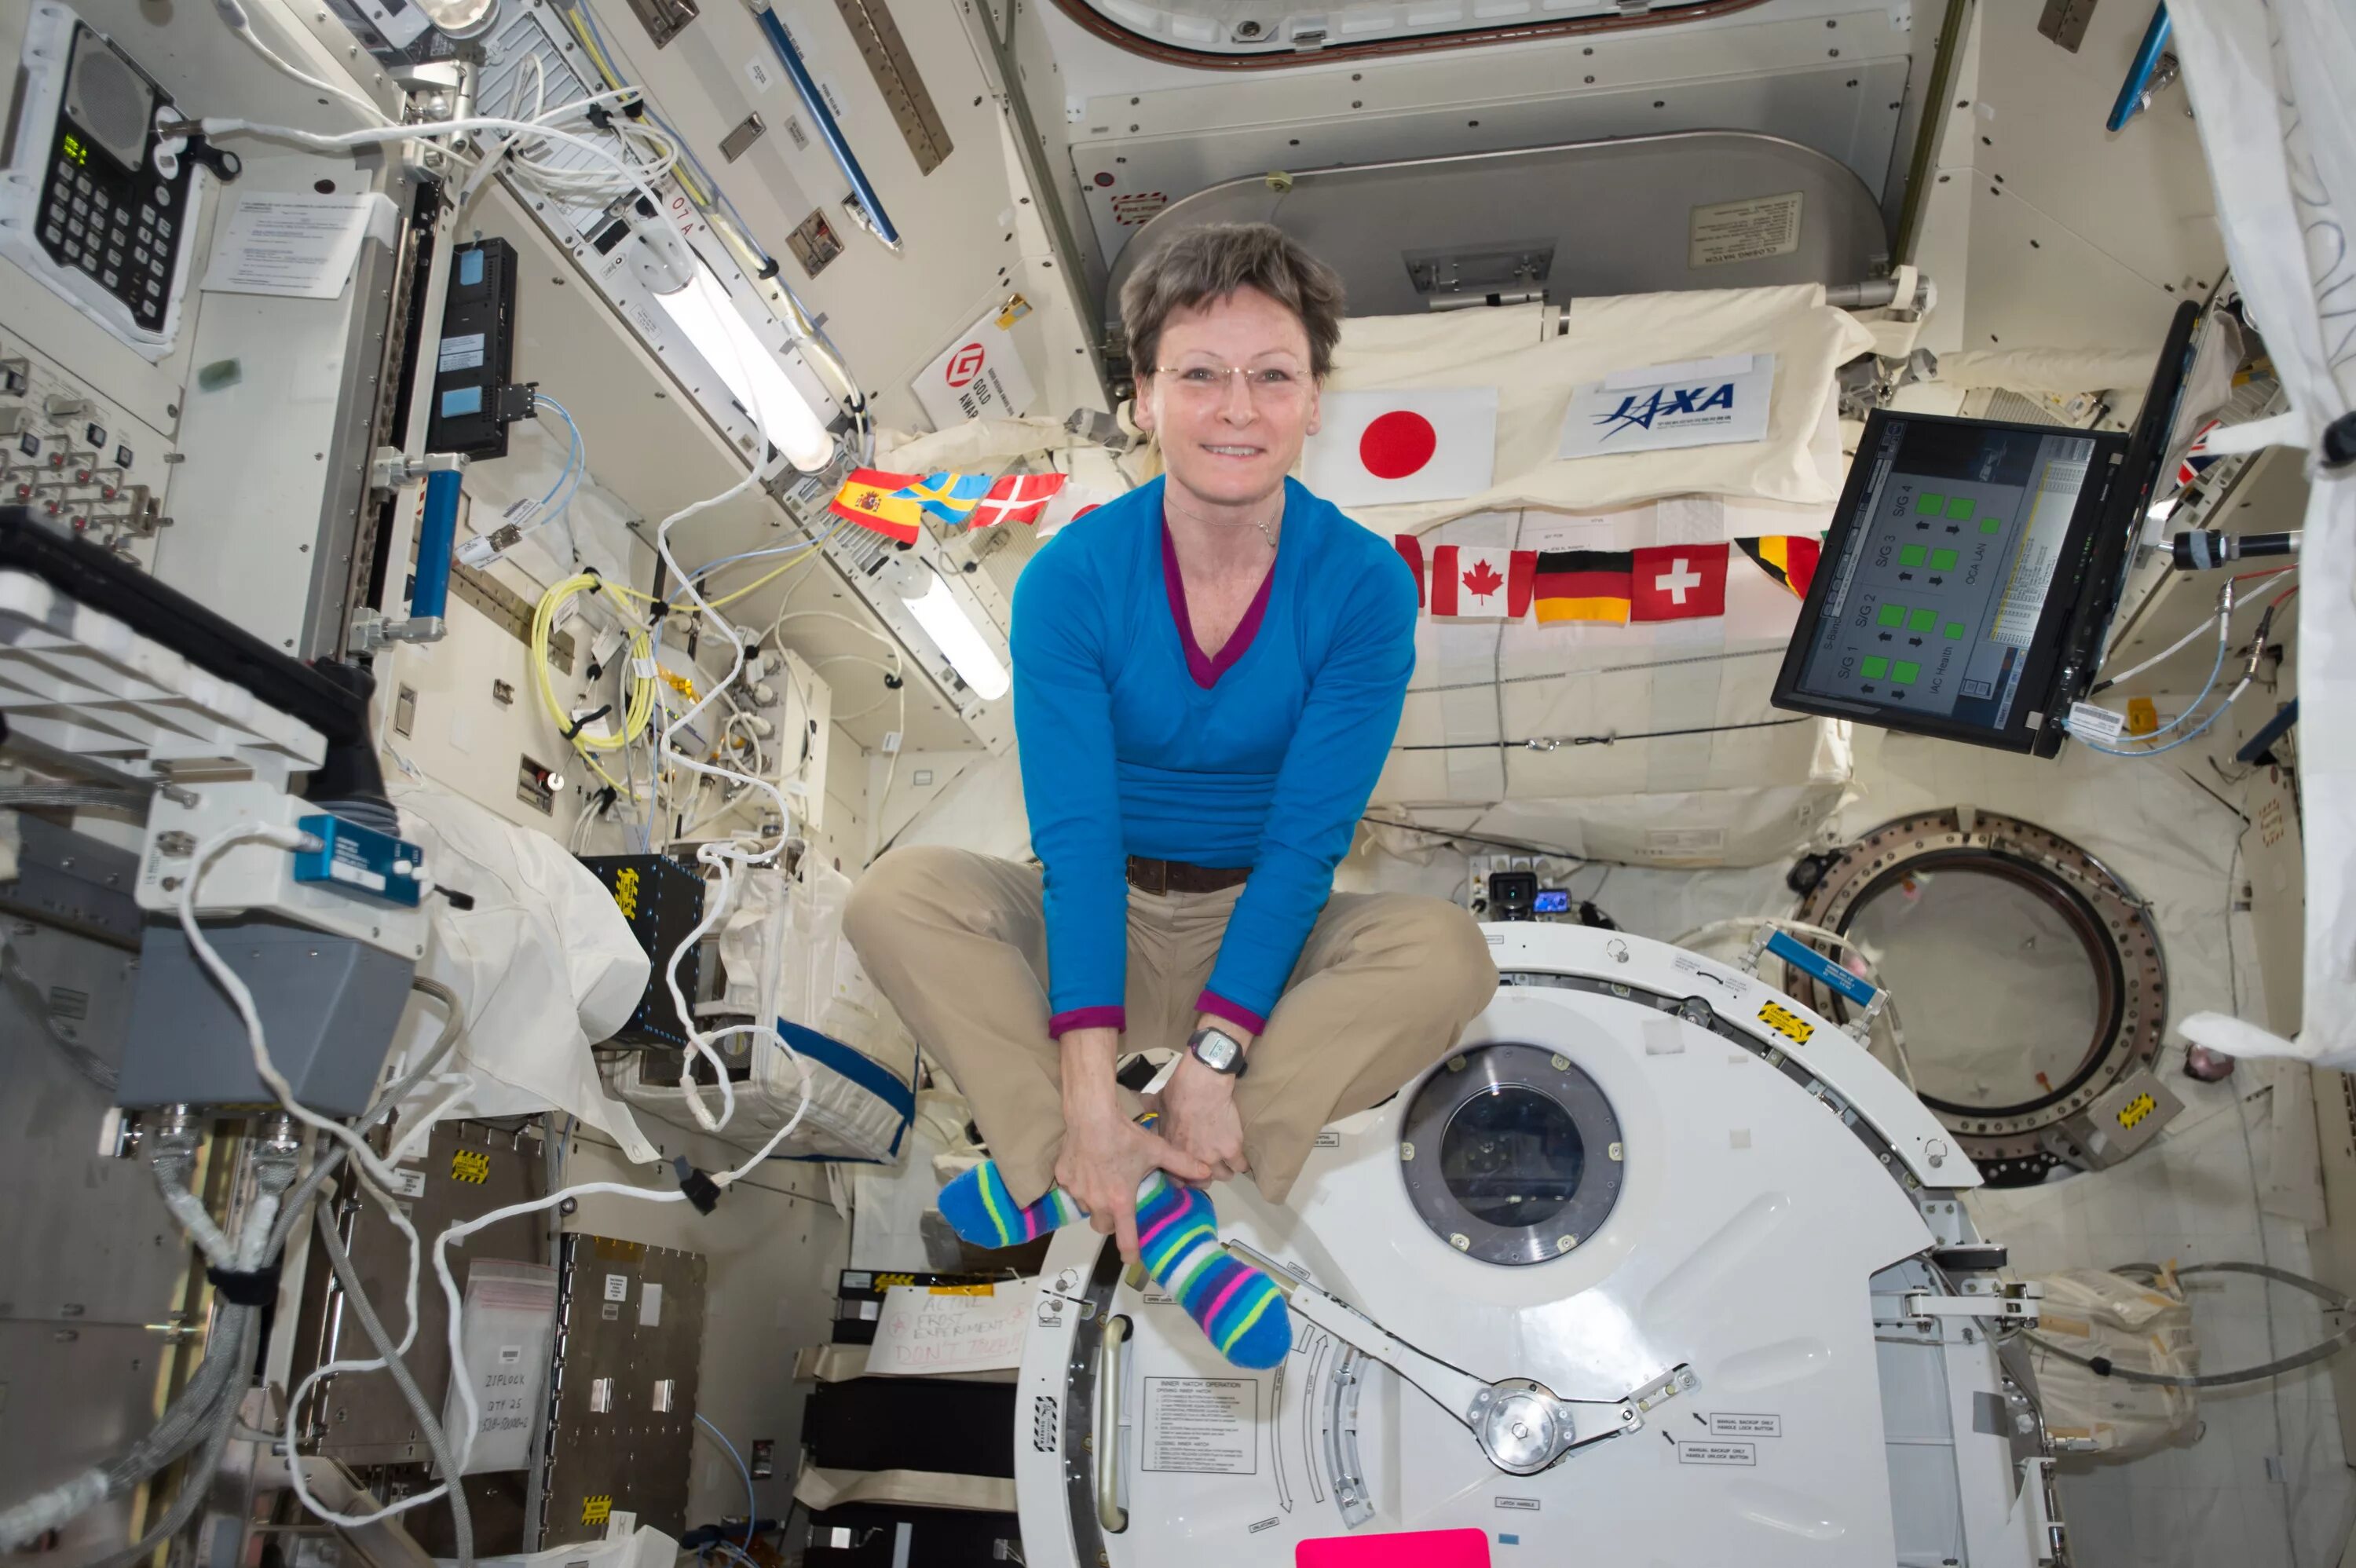 Рекорд по времени в космосе. Пегги Уитсон астронавт. Кэтрин Хайр астронавт. Космонавты на космической станции. Женщины на орбитальной станции.